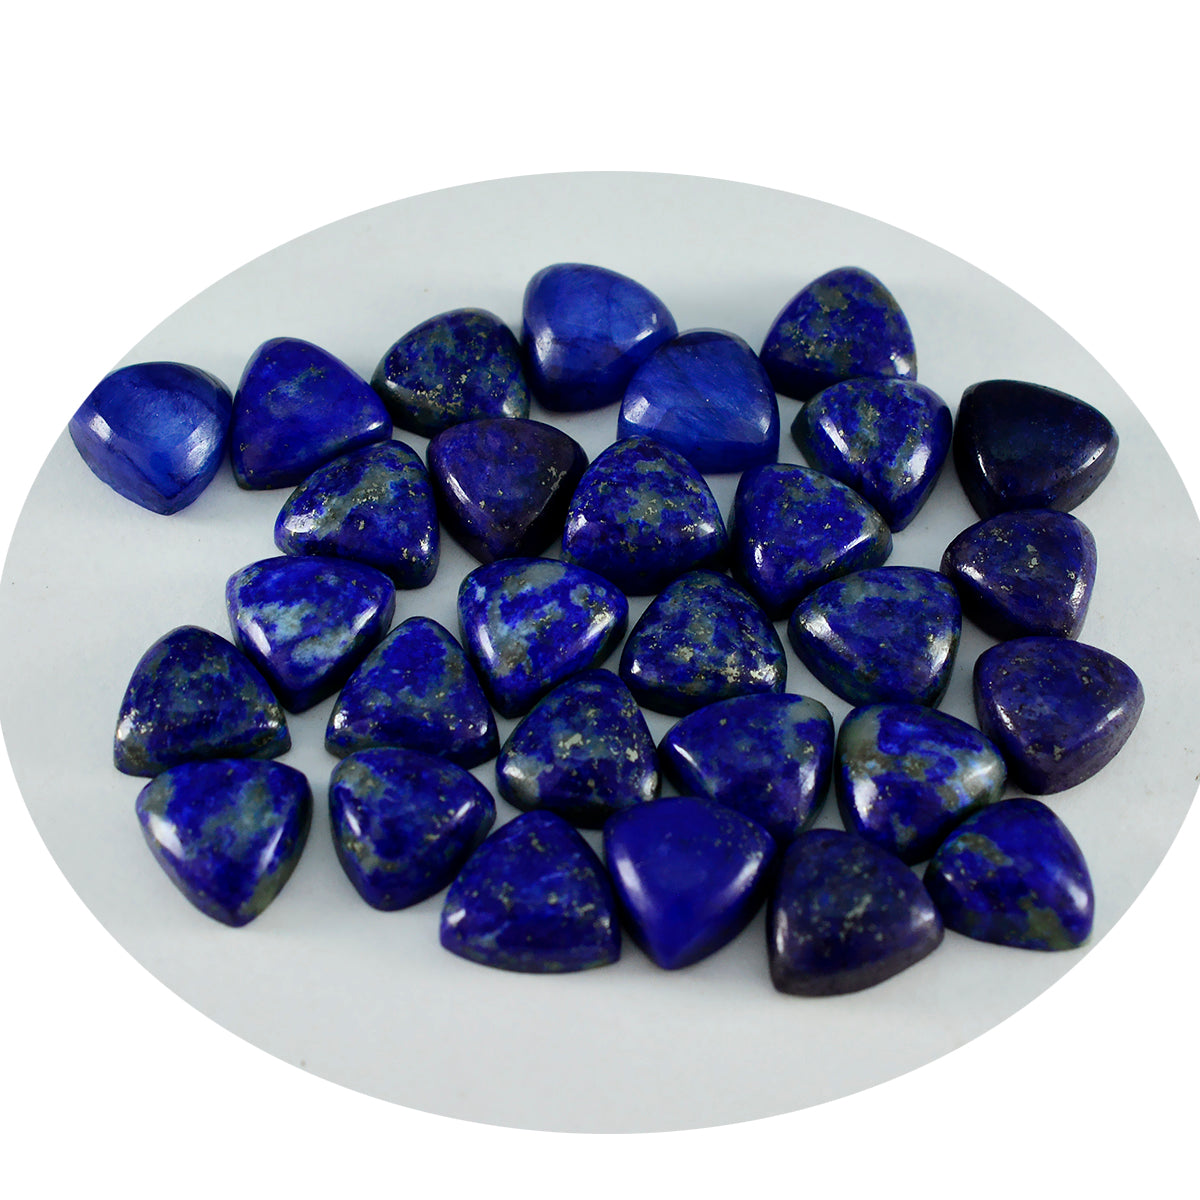 riyogems, 1 шт., синий лазурит, кабошон, 6x6 мм, форма триллиона, красивое качество, свободные драгоценные камни